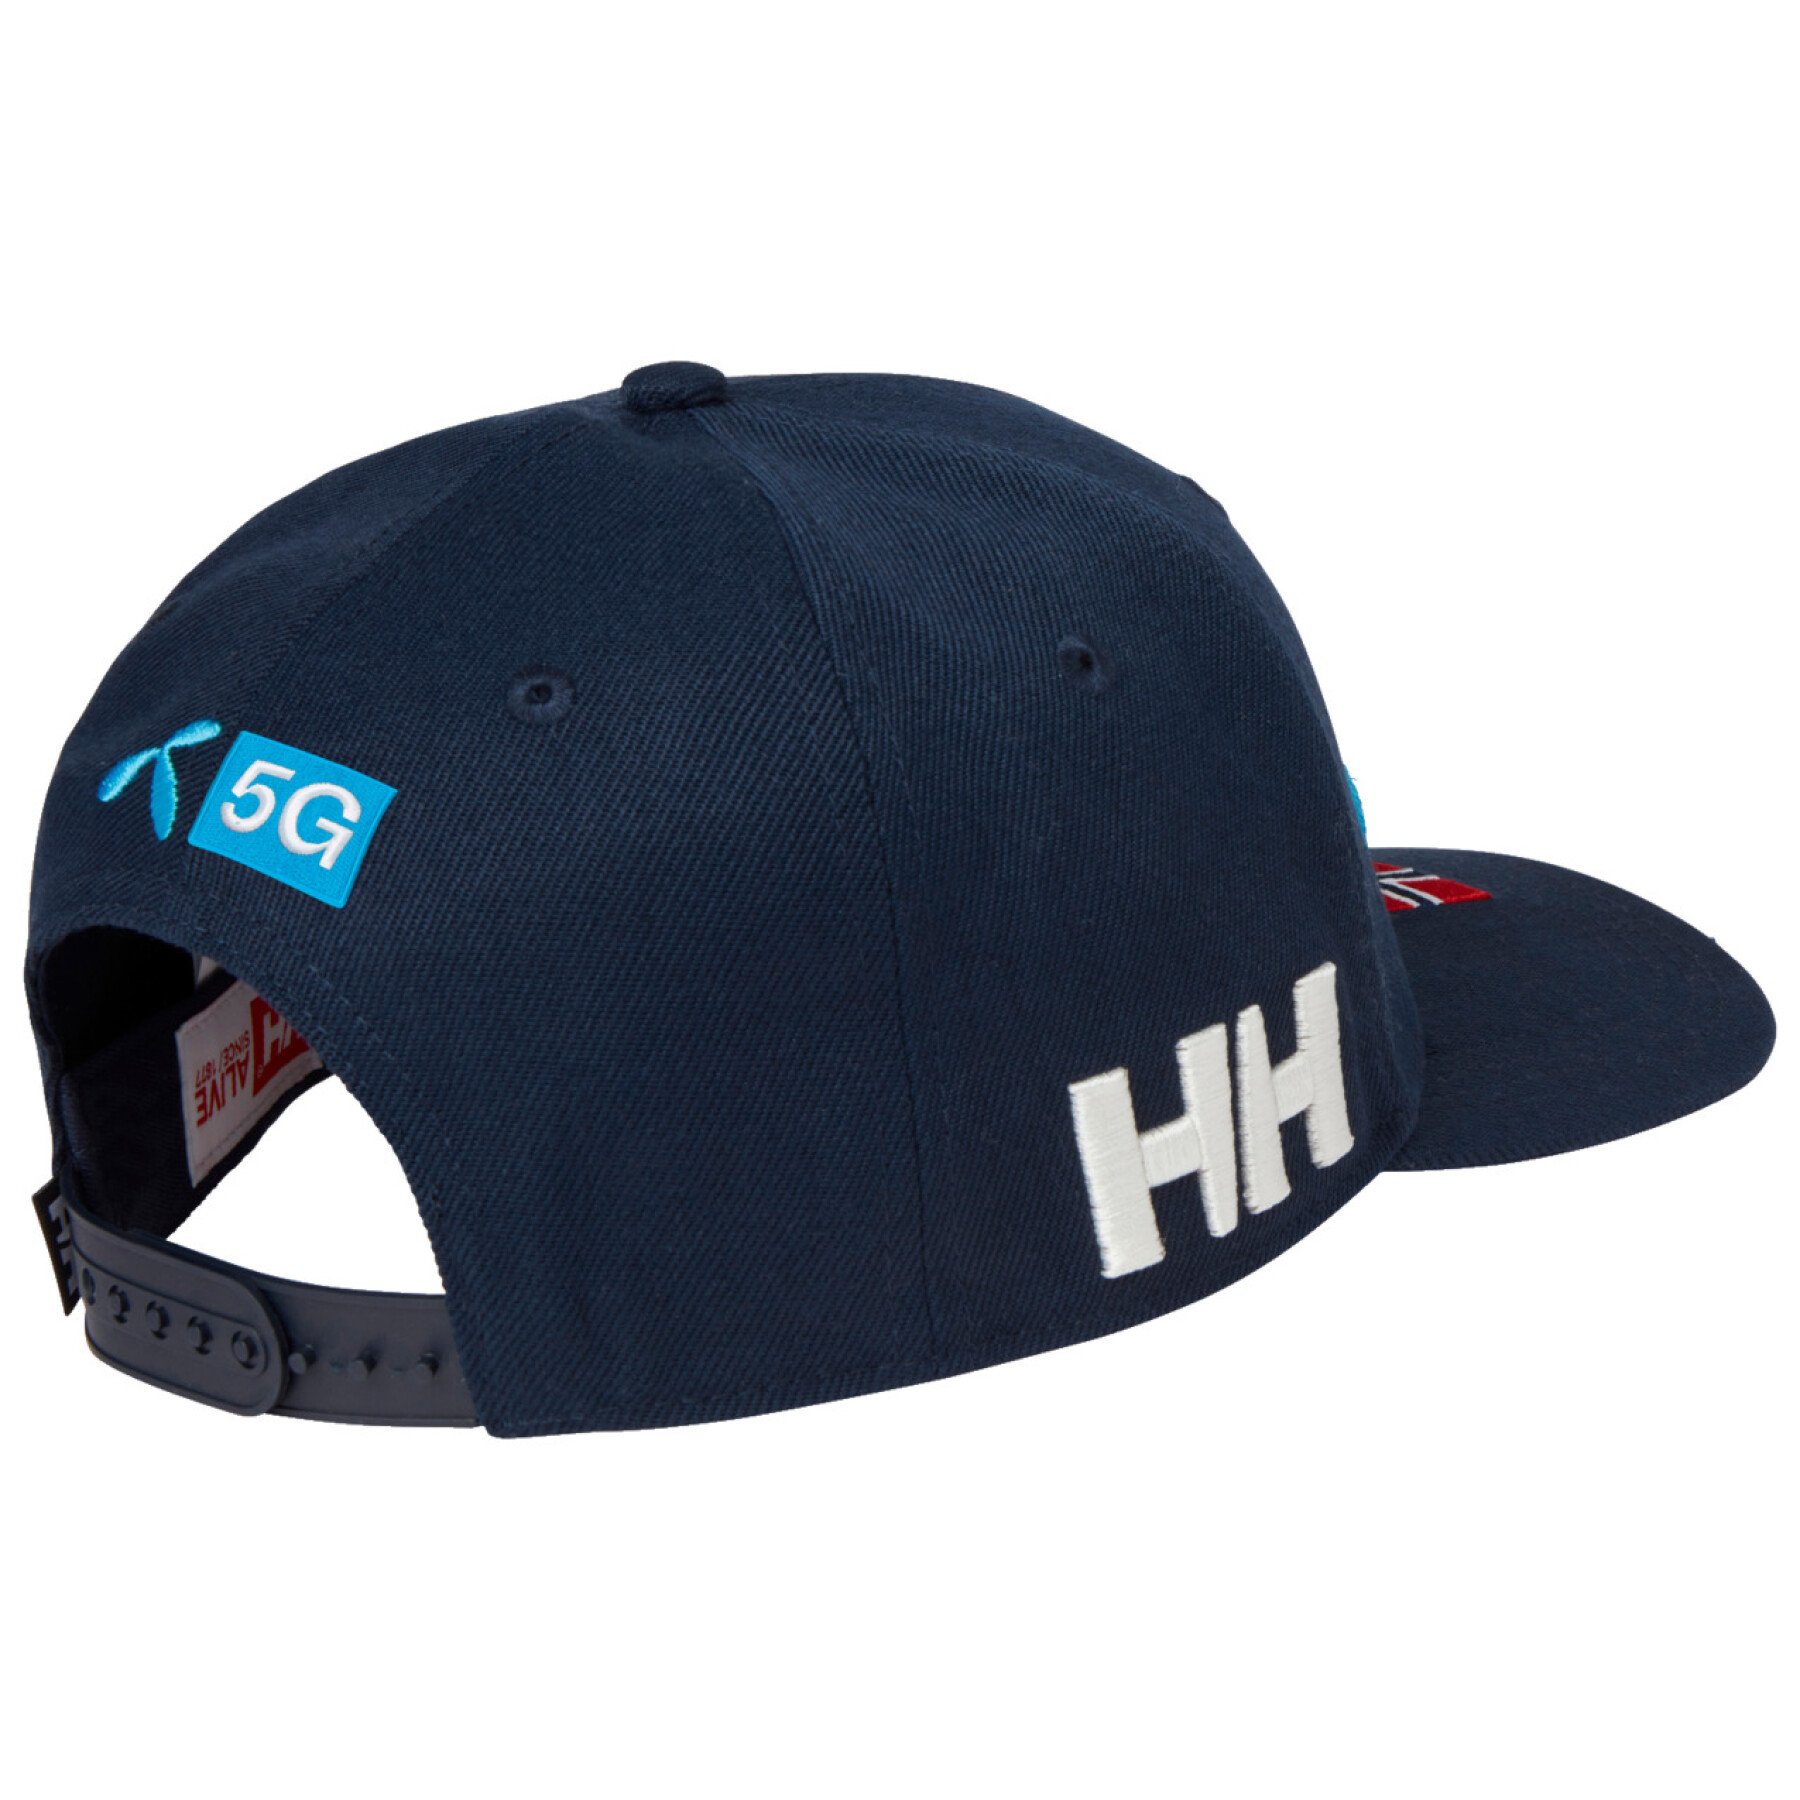 Cap Helly Hansen Brand